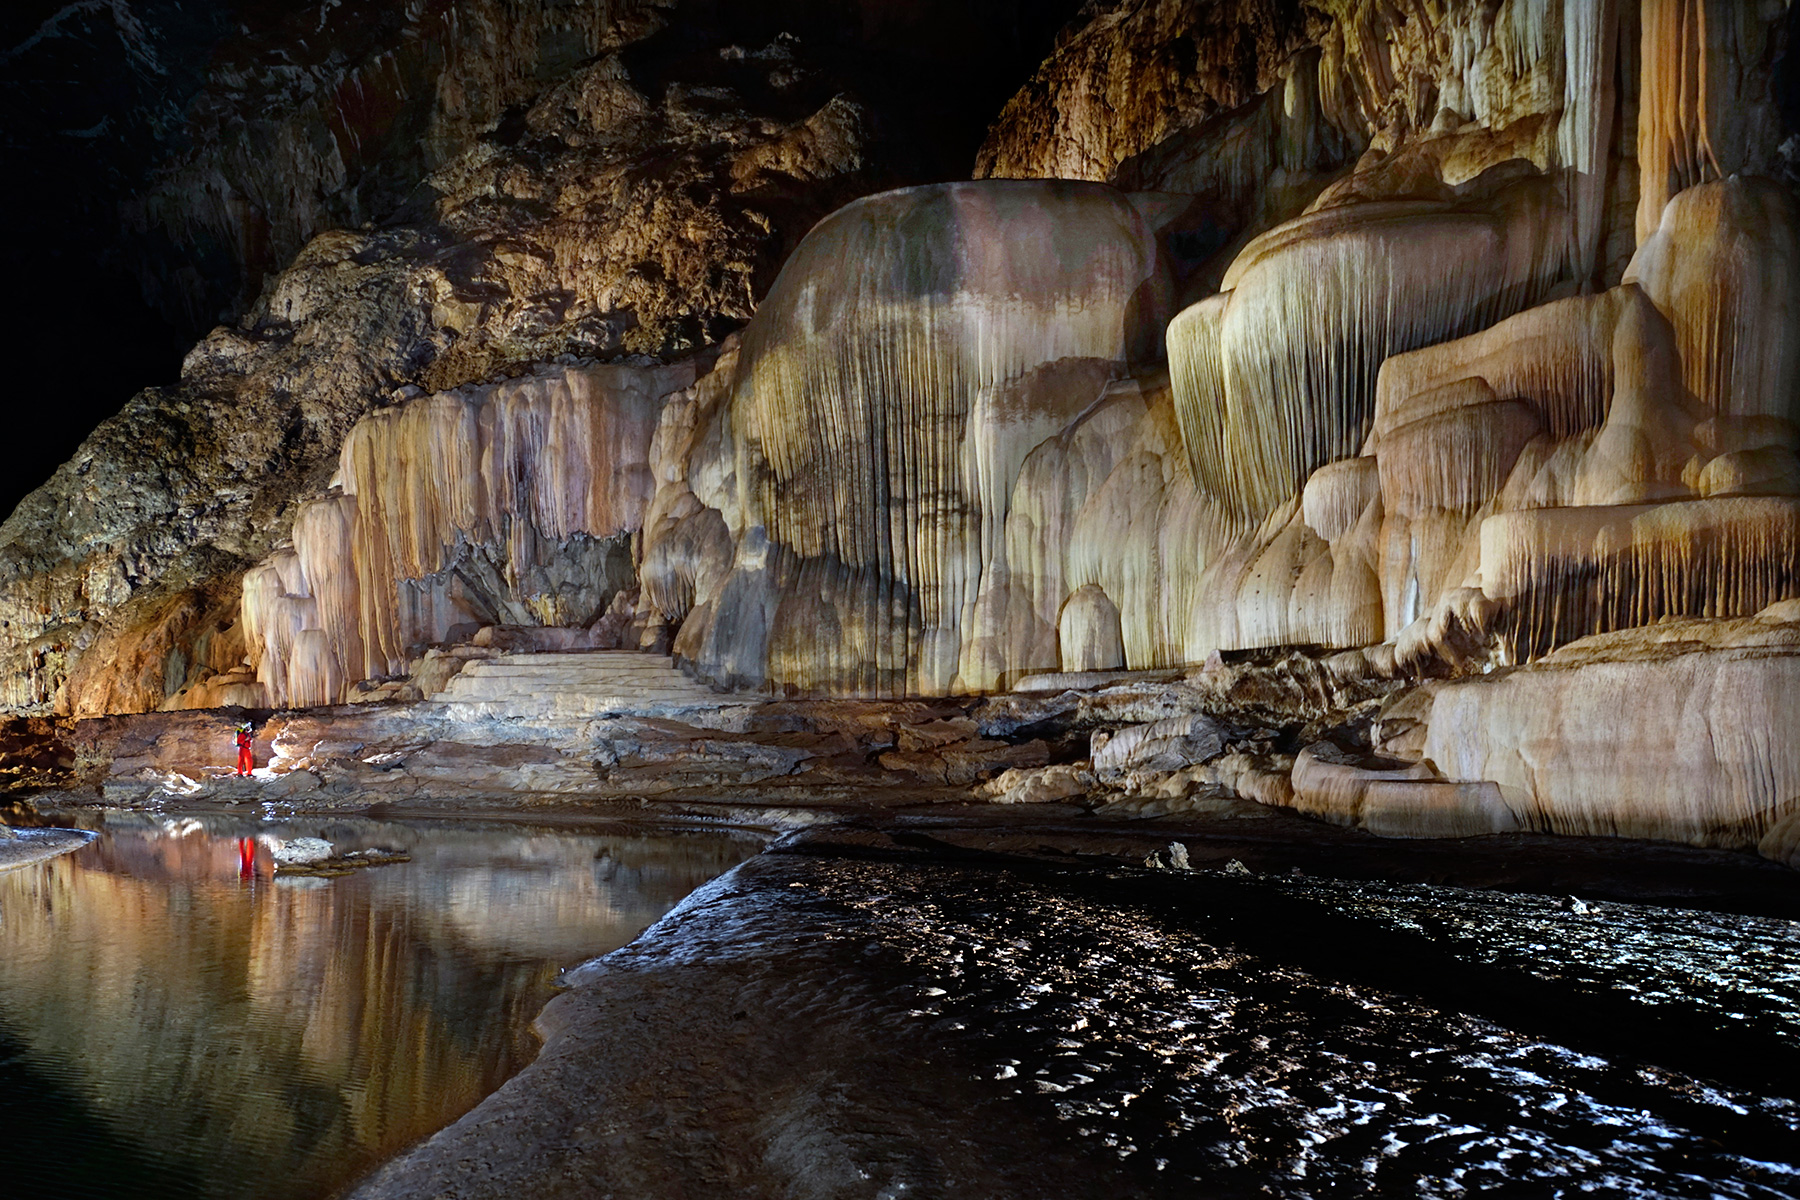 Lapa do Janelao (Itacarambi, Minas Gerais) - Coulées de calcite géantes perchées au dessus de la rivière.